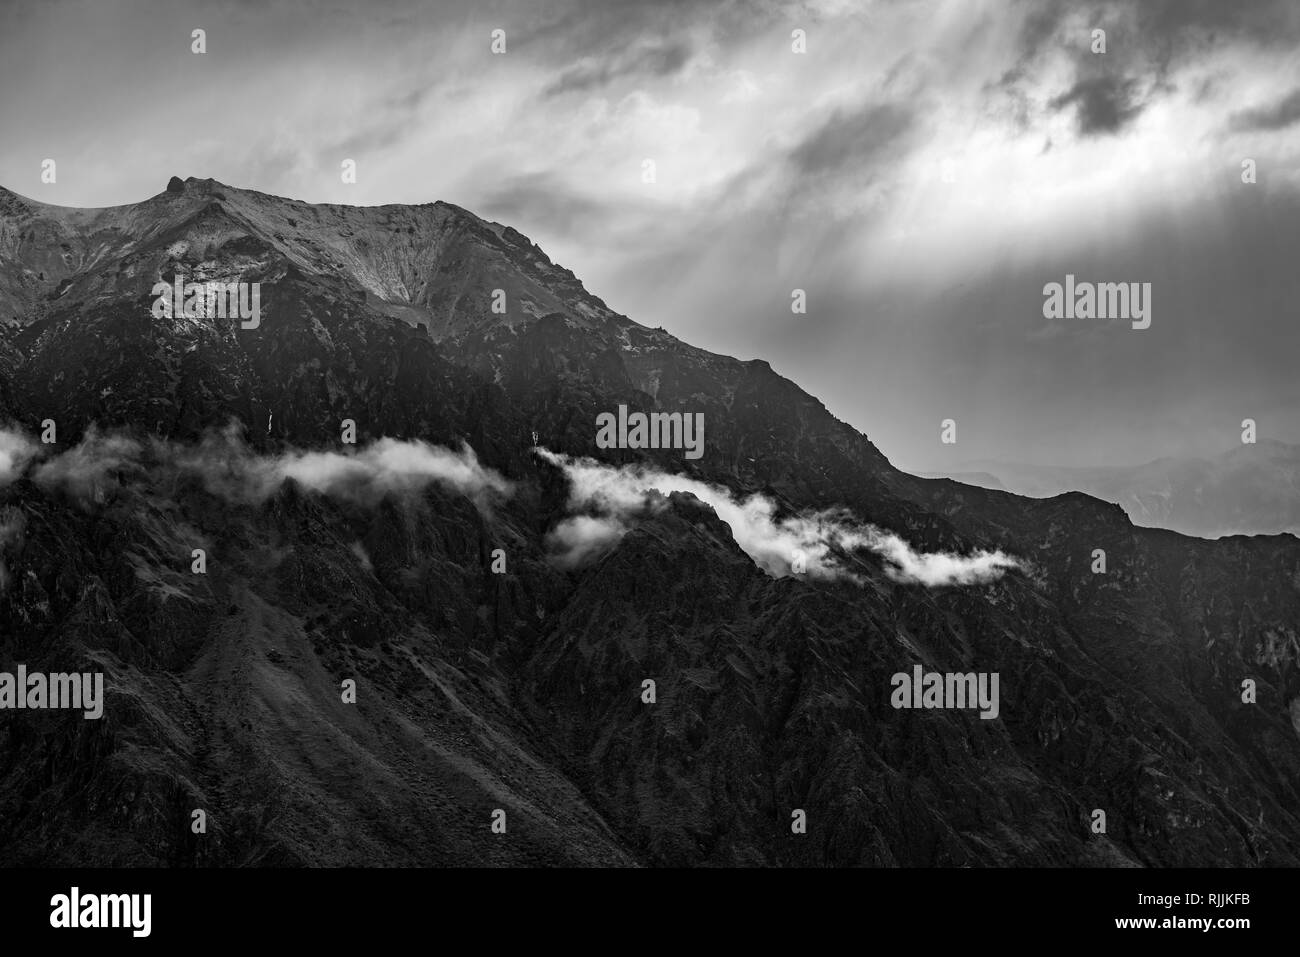 La gamme de montagne des Andes en noir et blanc comme la lumière du soleil illumine les sommets et les nuages près du Canyon de Colca, Arequipa, Pérou. Banque D'Images